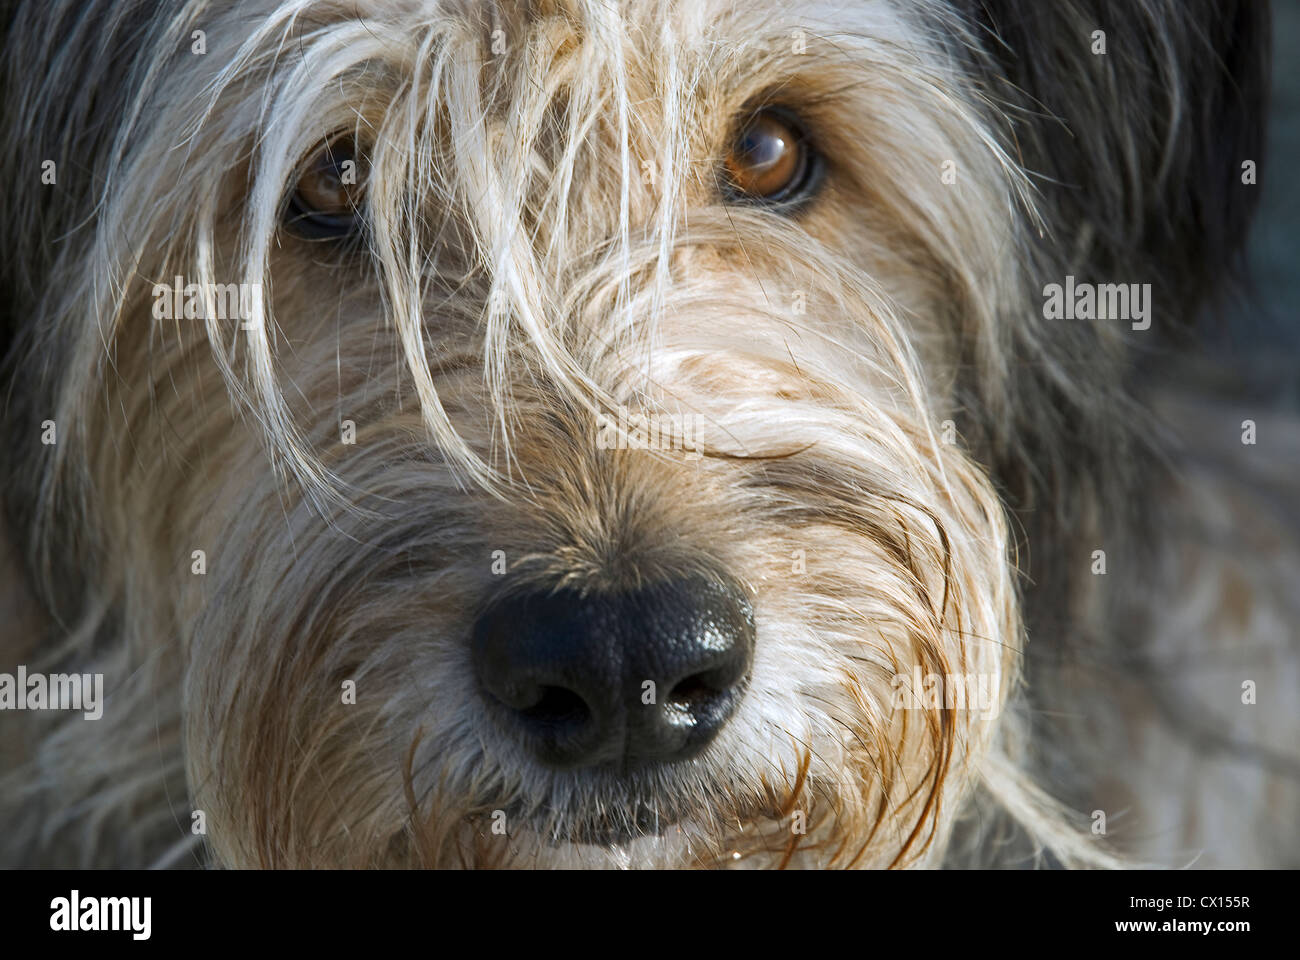 Ritratto di un cane Briard cercando ardentemente e fiduciosamente alla fotocamera Foto Stock